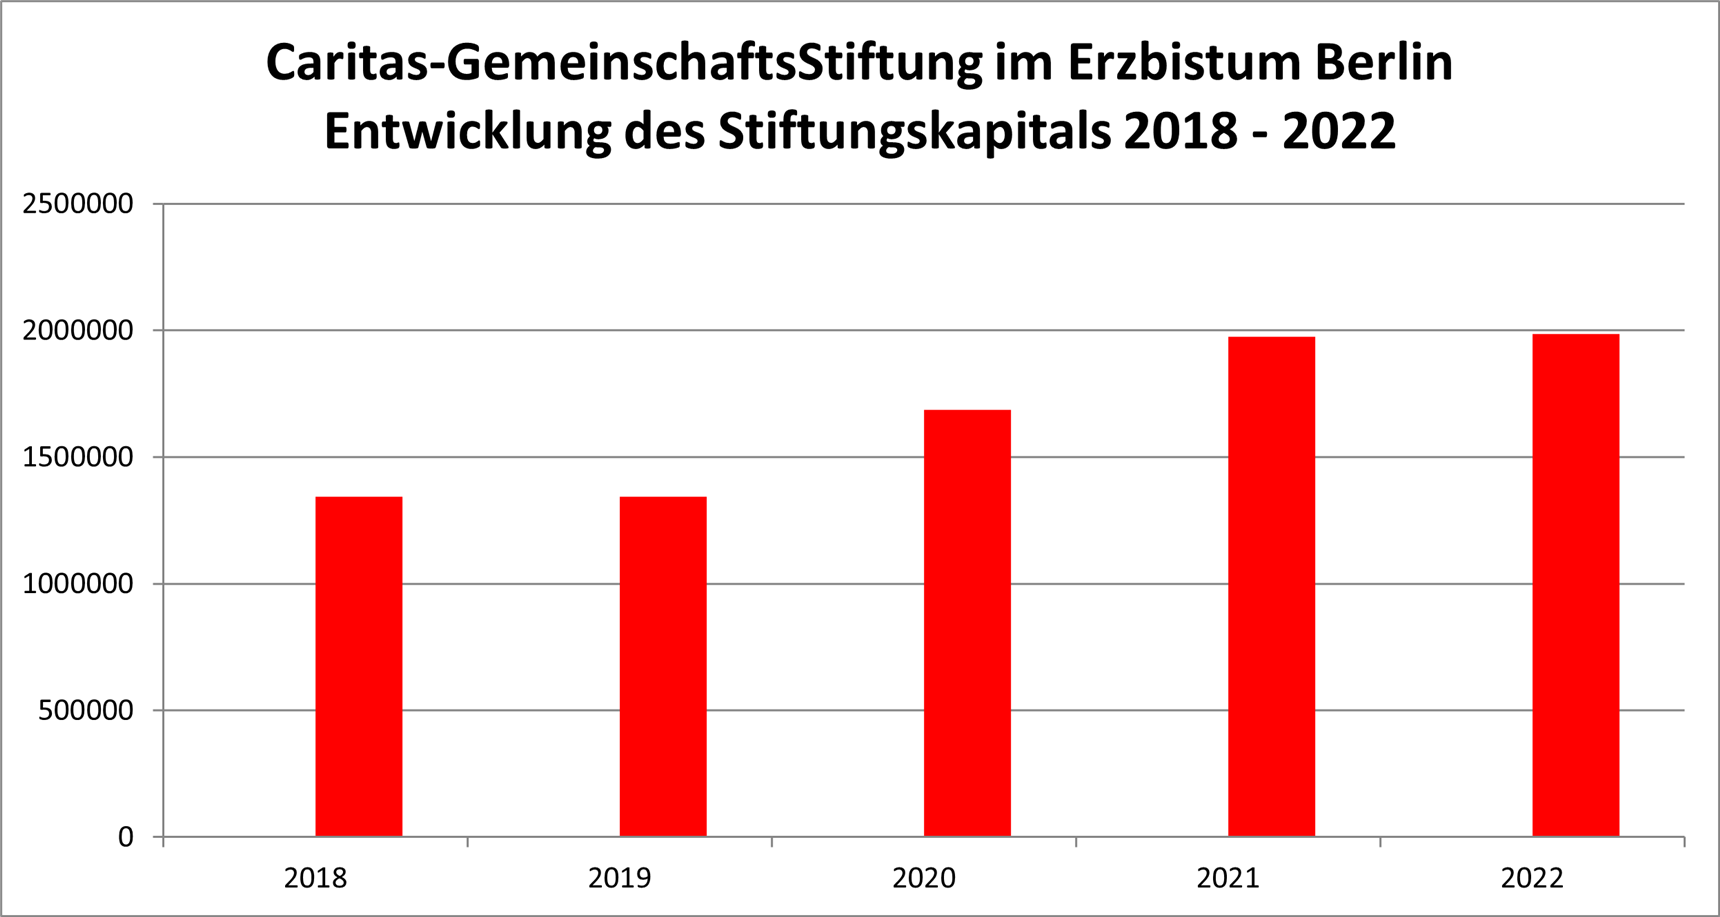 Caritas-GemeinschaftsStiftung im Erzbistum Berlin Entwicklung des Stiftungskapitals 2018 - 2022